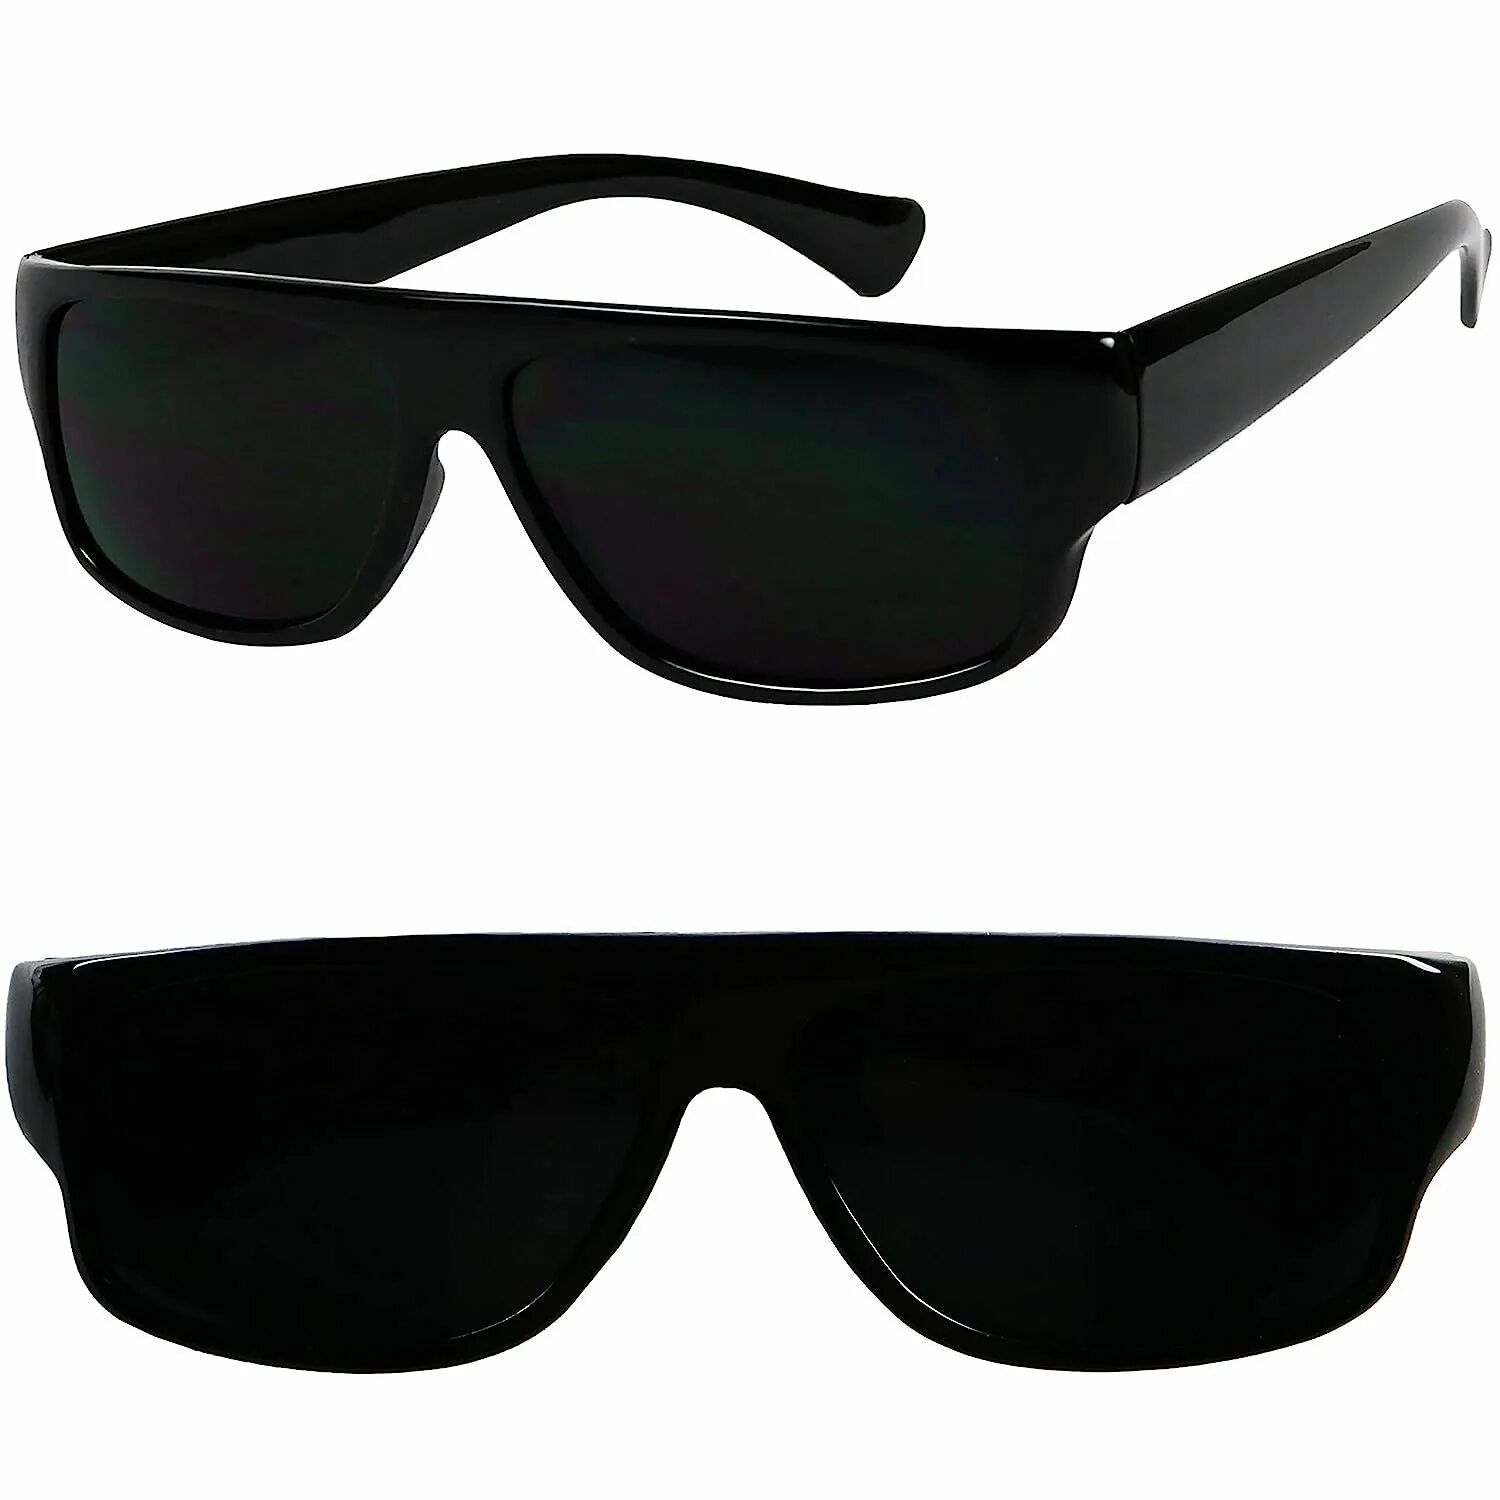 Очки locs Eazy e. Очки Cyclone Black Sunglasses. Armani UV Protection очки. Очки корда сунглассес Классик.